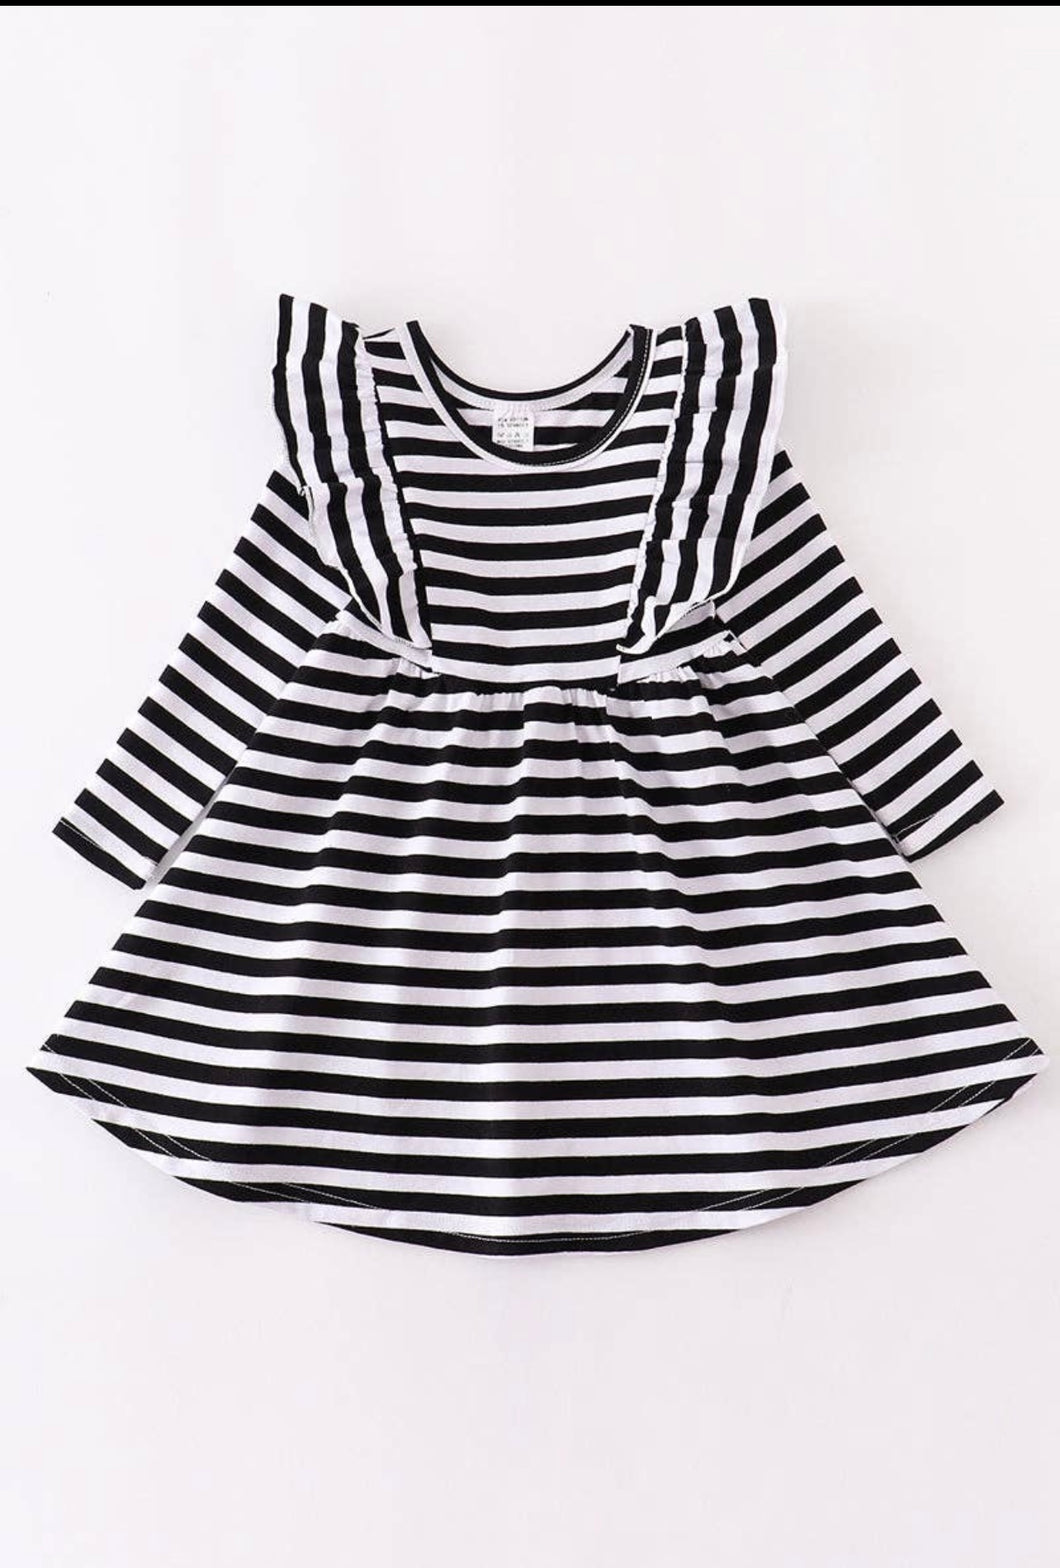 Black & White Stripe Dress